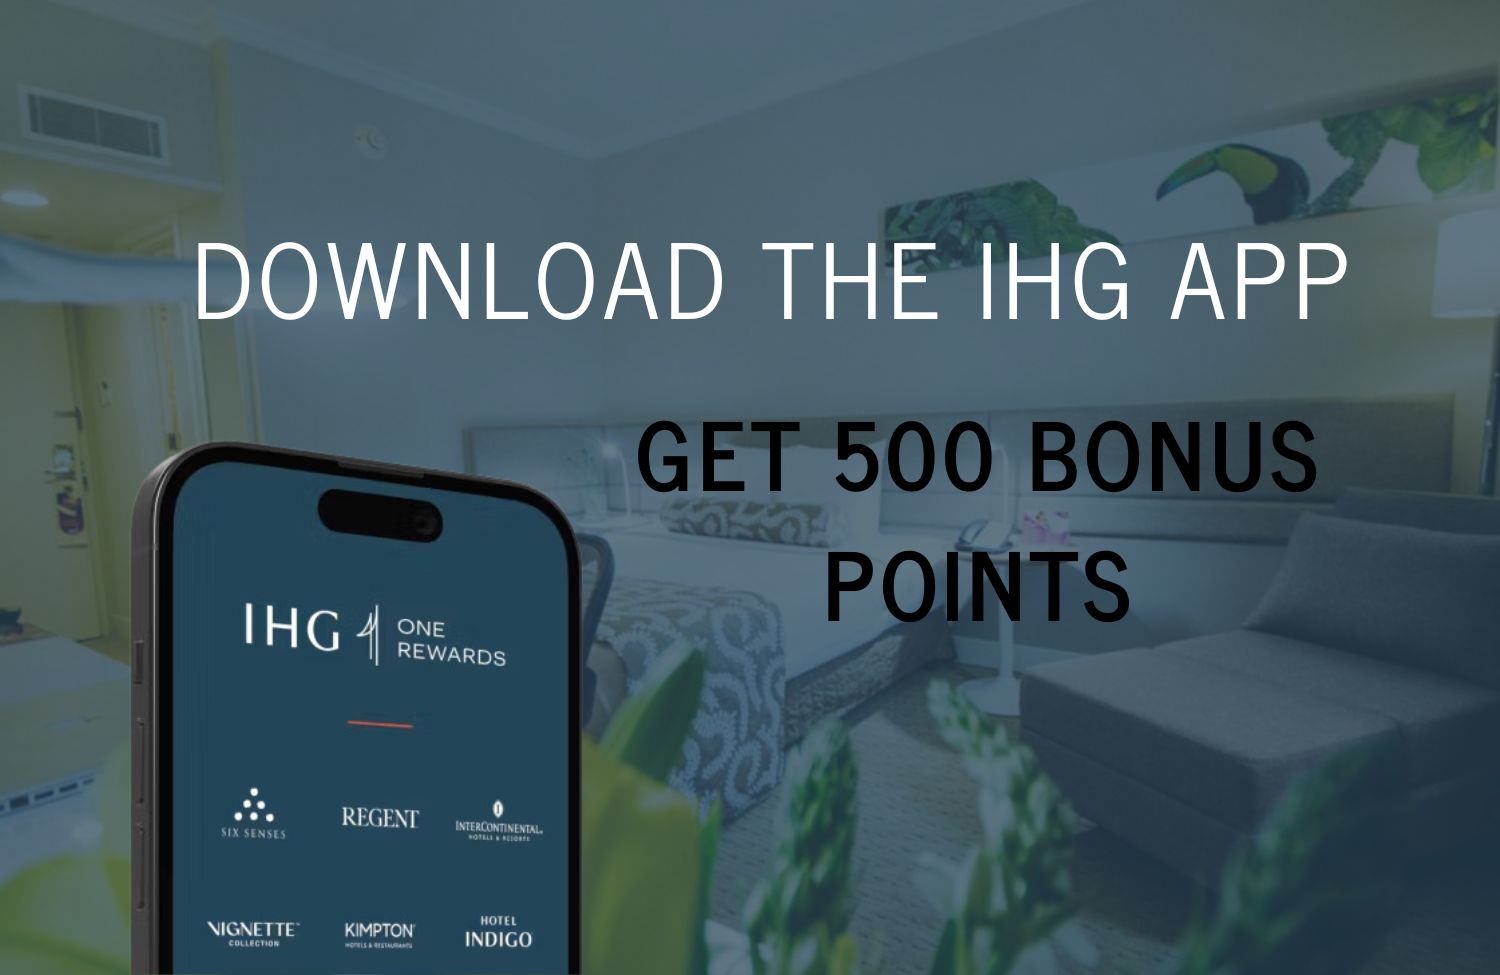 Download the IHG app